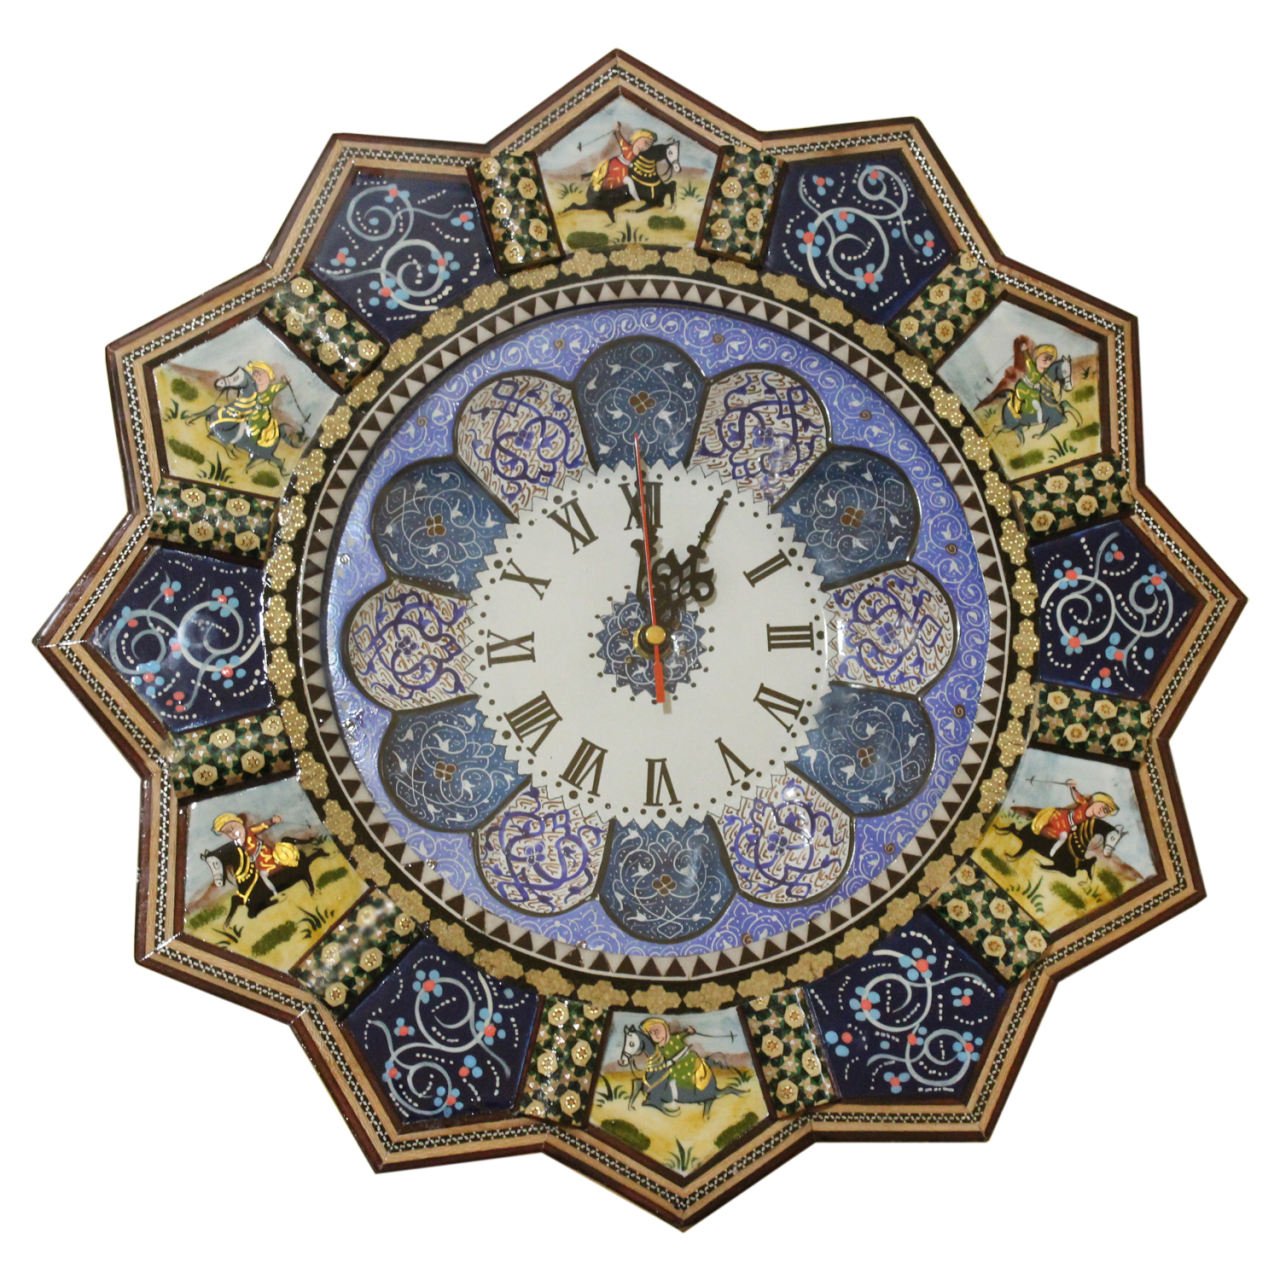 Khatam clock Code 041007700005 , Khatam clock, Inlaid, Khatam clock model, Khatam